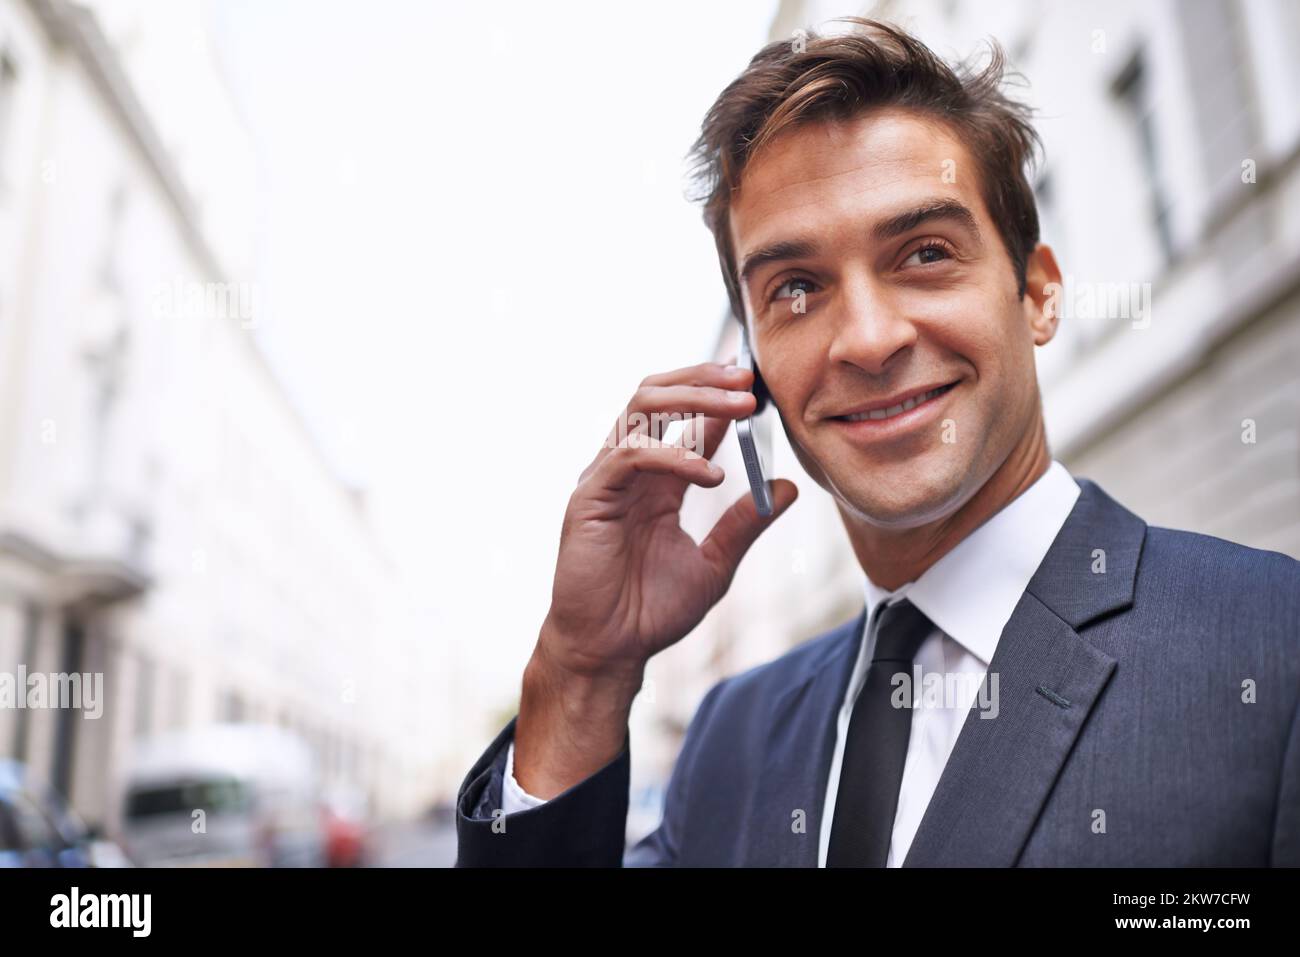 Im dans la ville. Un beau homme d'affaires en costume parlant sur son téléphone portable dans la ville. Banque D'Images